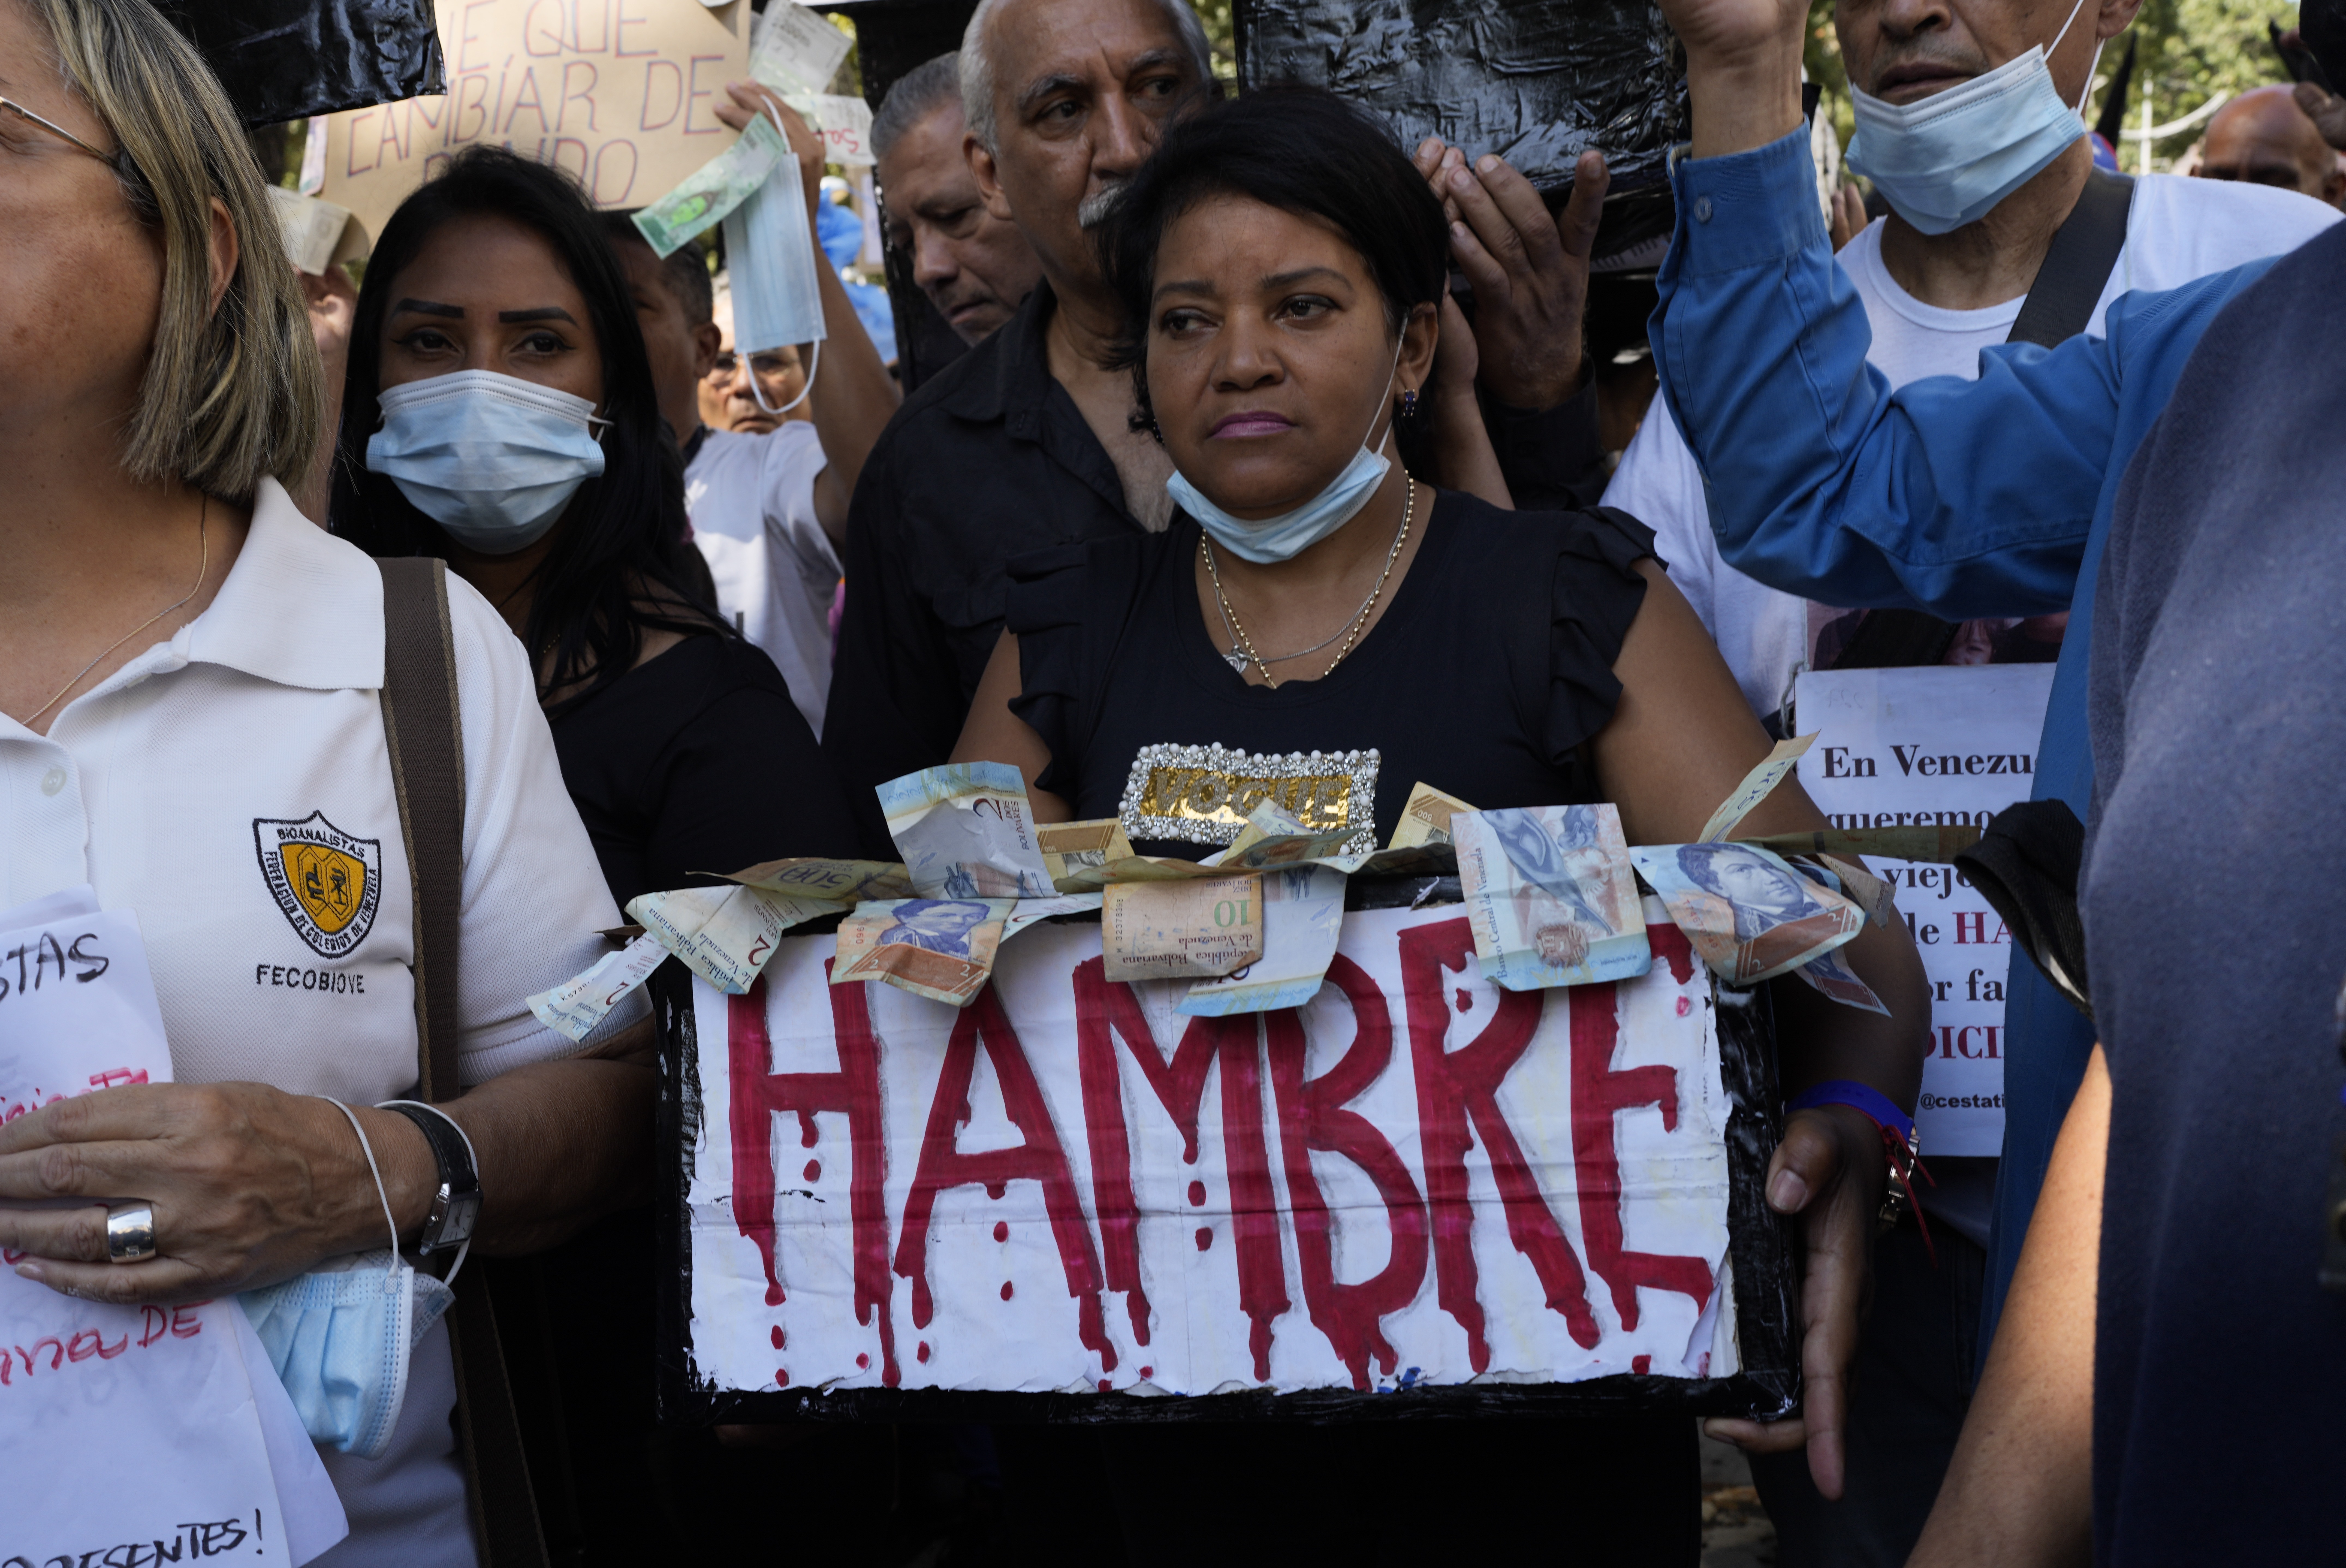 Un manifestante lleva una caja de billetes de bolívar que dice "hambre" durante una manifestación por mejores salarios y beneficios en Caracas, Venezuela, el miércoles 11 de enero de 2023. (AP Foto/Ariana Cubillos)